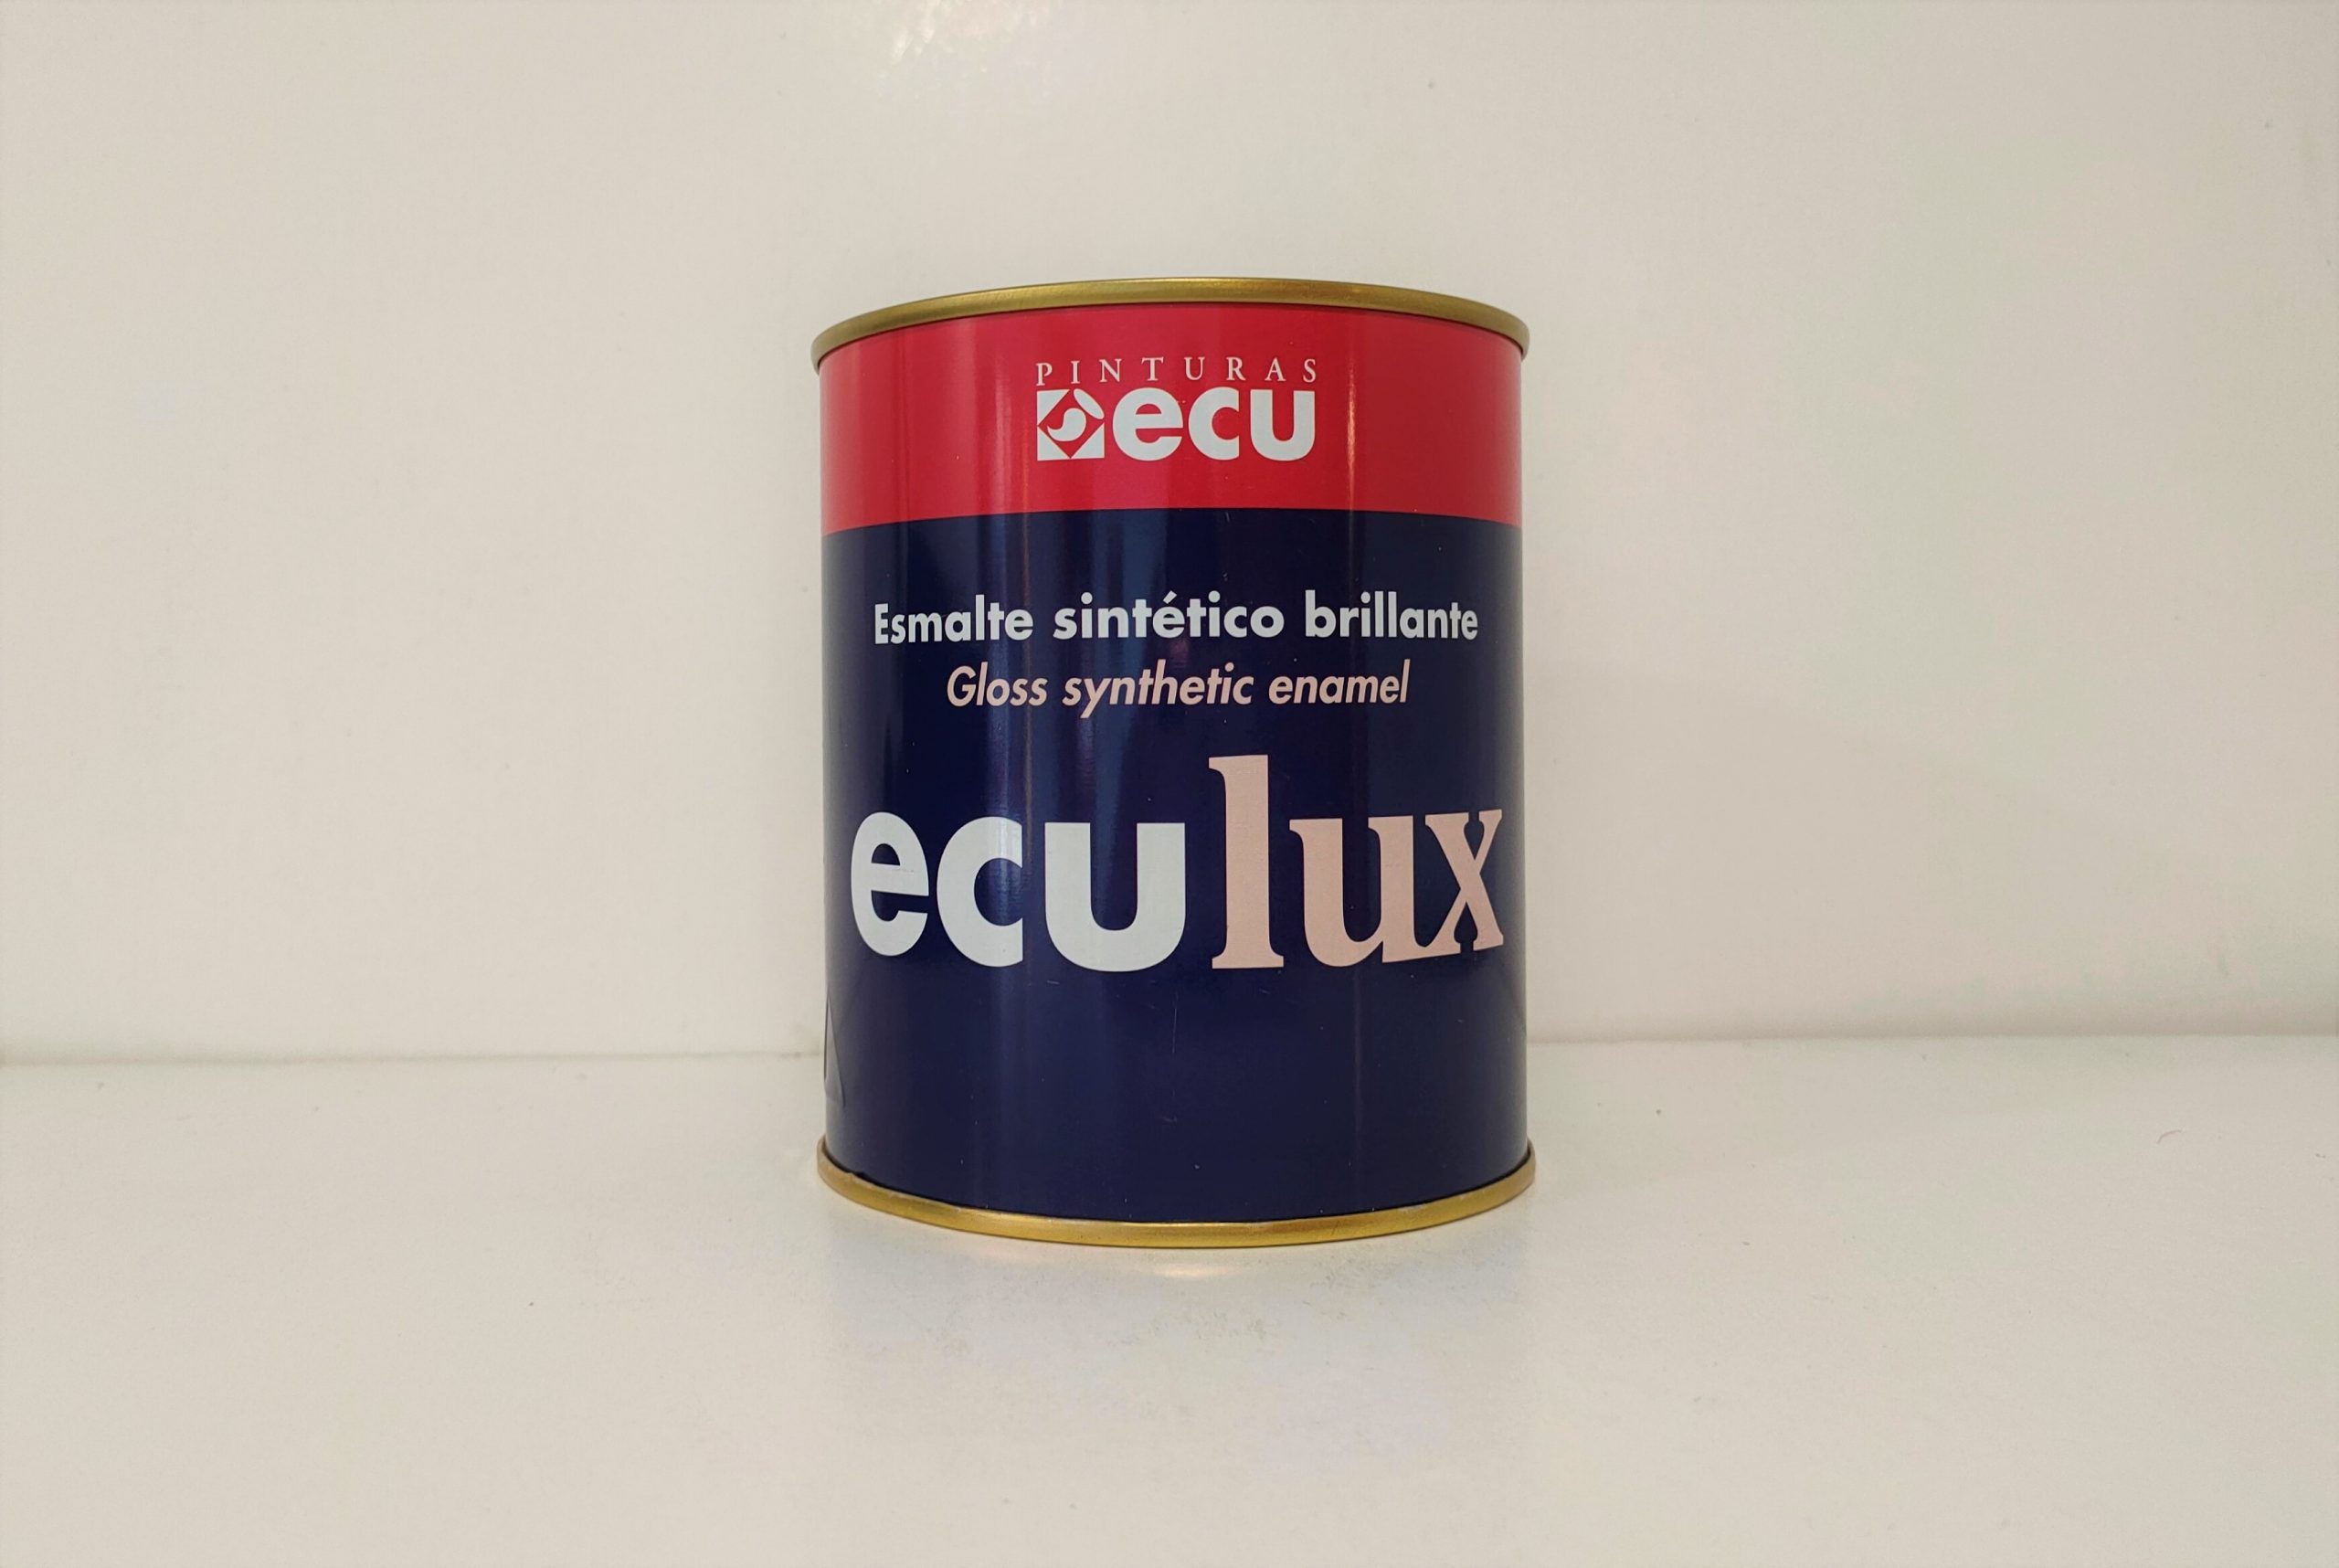 Eculux, el esmalte brillante de máxima calidad